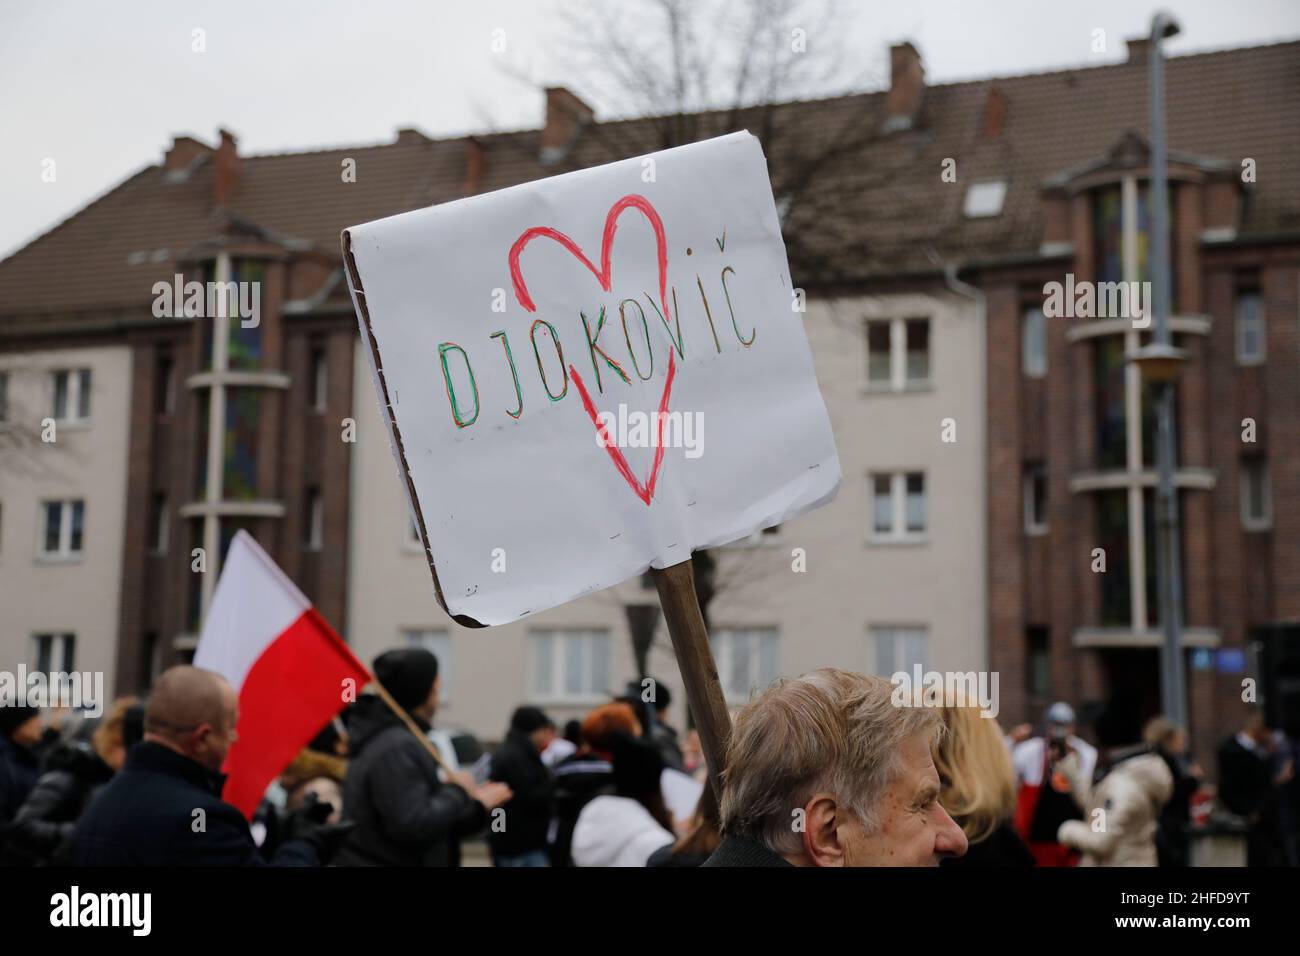 Ein Demonstrant hält ein Schild 'Love Djokovic' (Novak Djokovic) auf einer Veranstaltung polnischer und deutscher Querdenker. Zgorzelec, Polen 15.1.20 Stock Photo